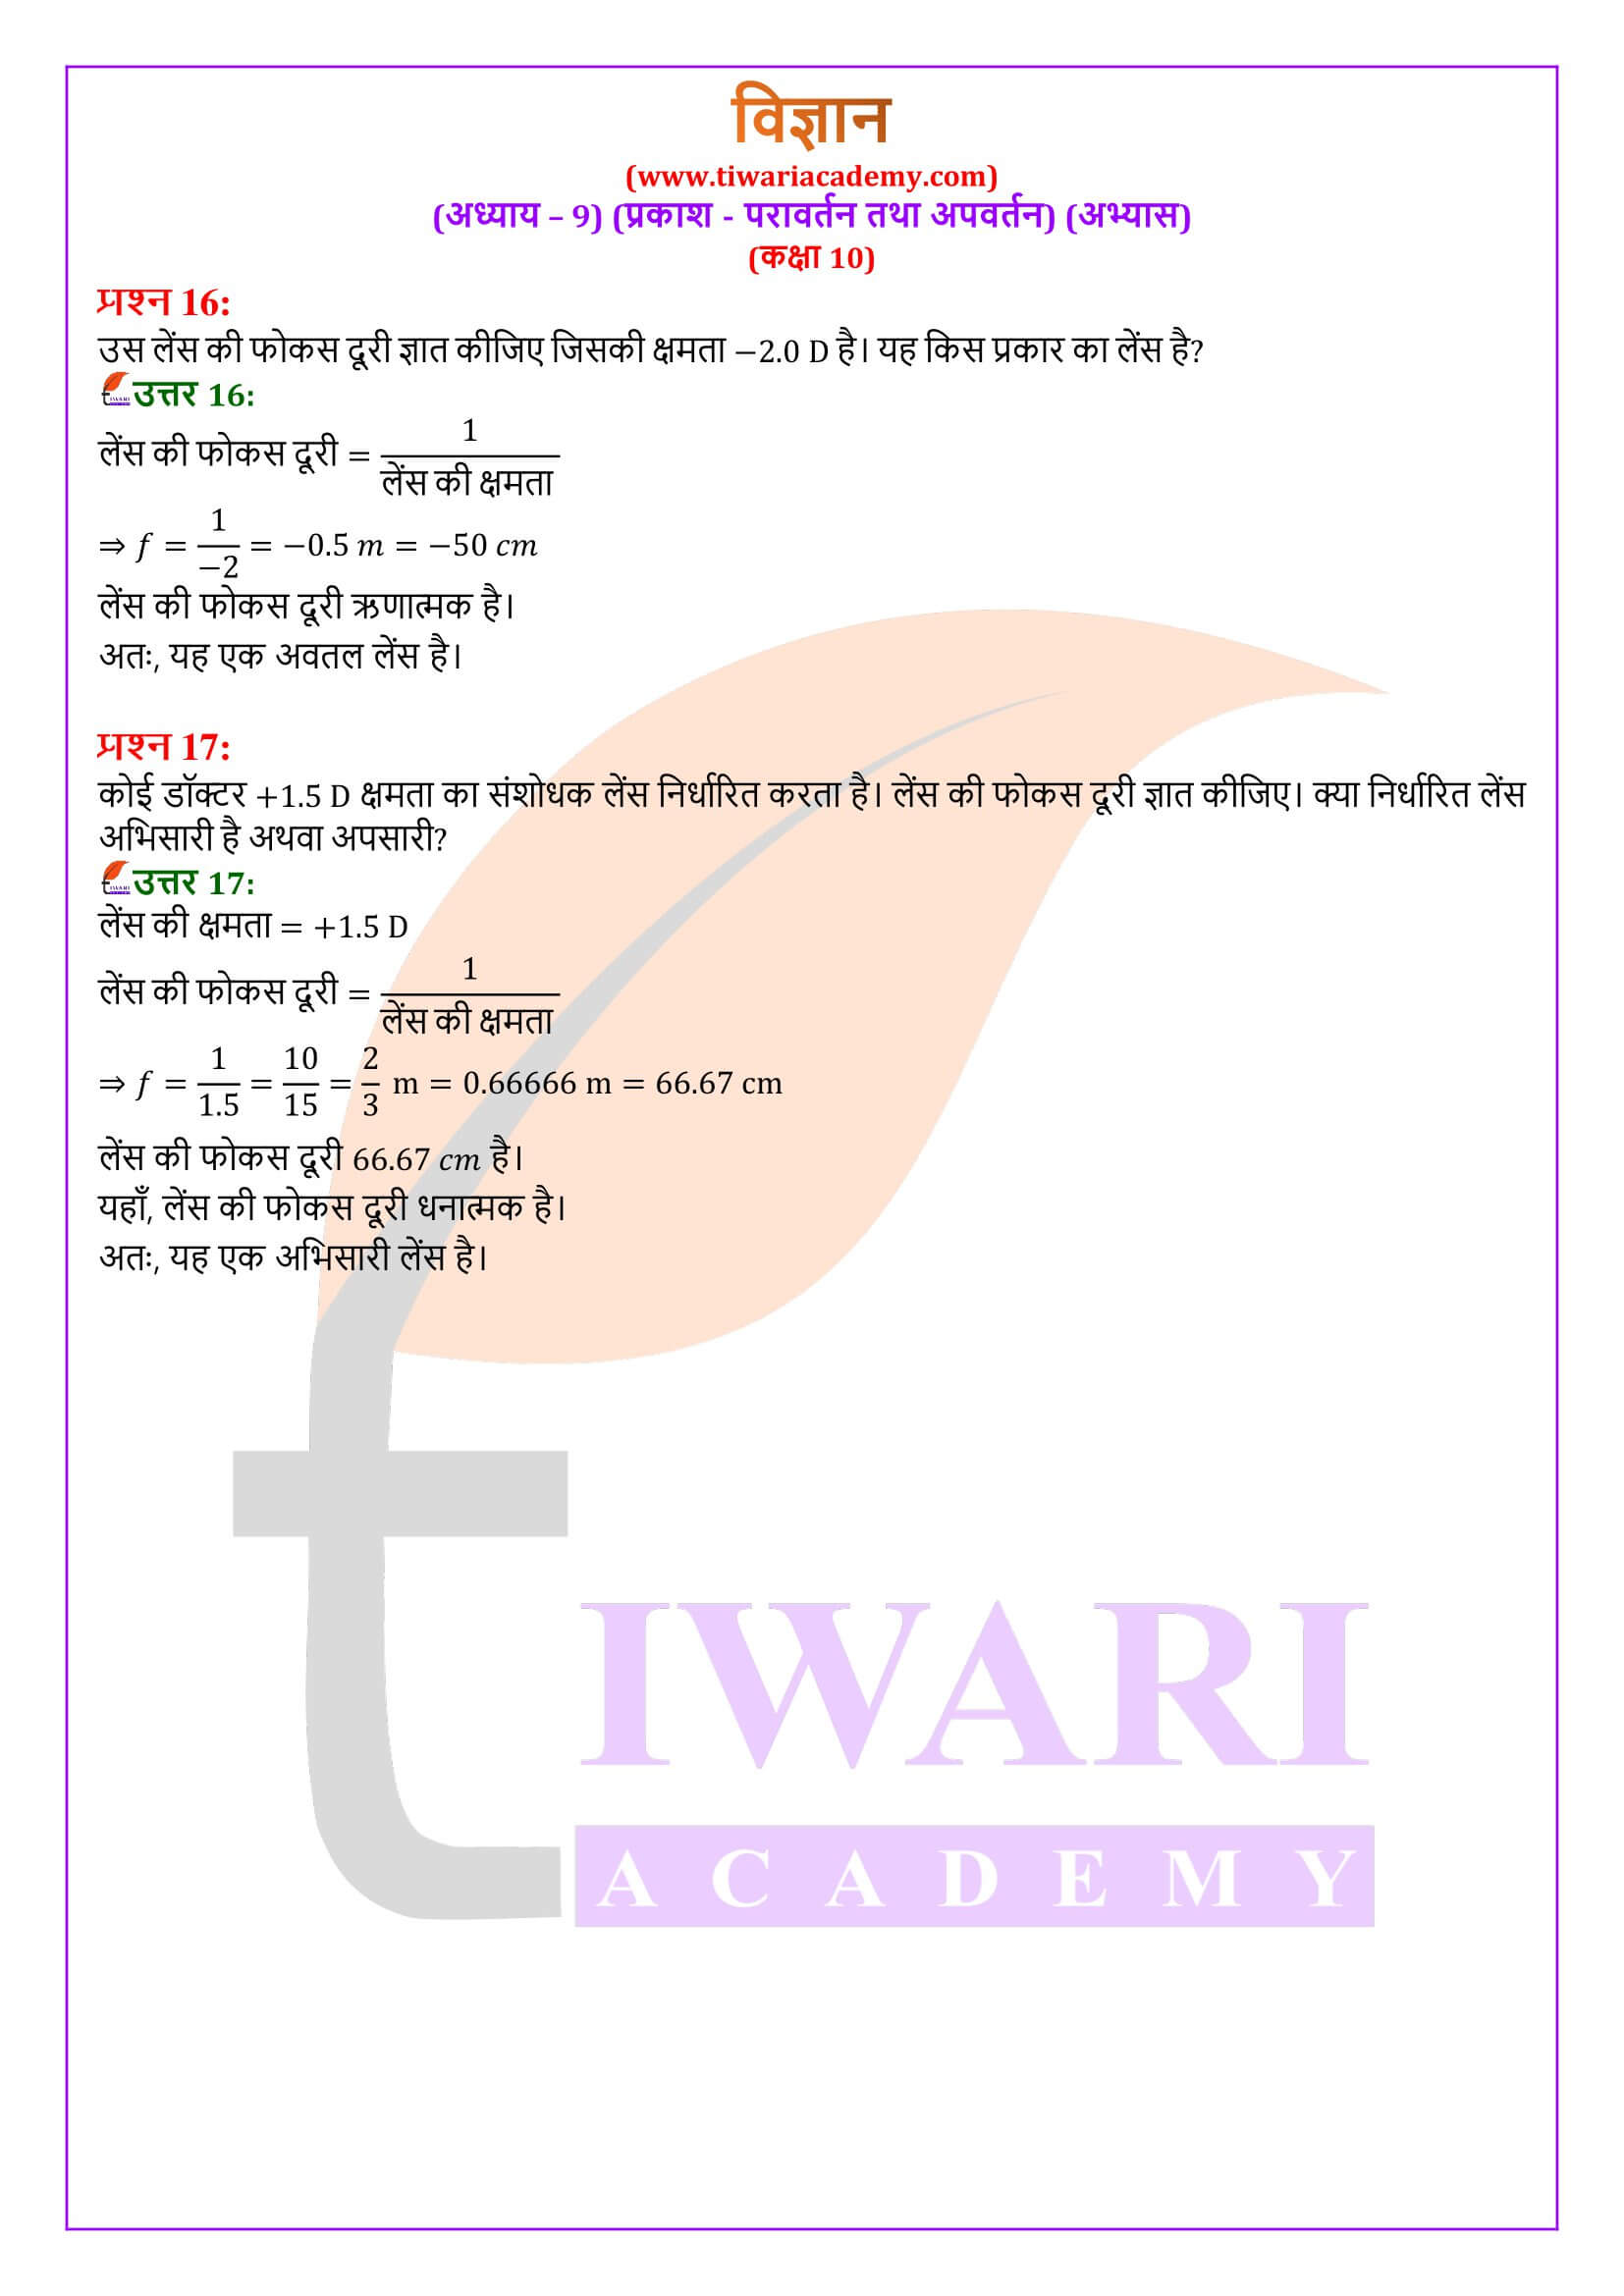 कक्षा 10 विज्ञान अध्याय 9 के हल हिंदी में